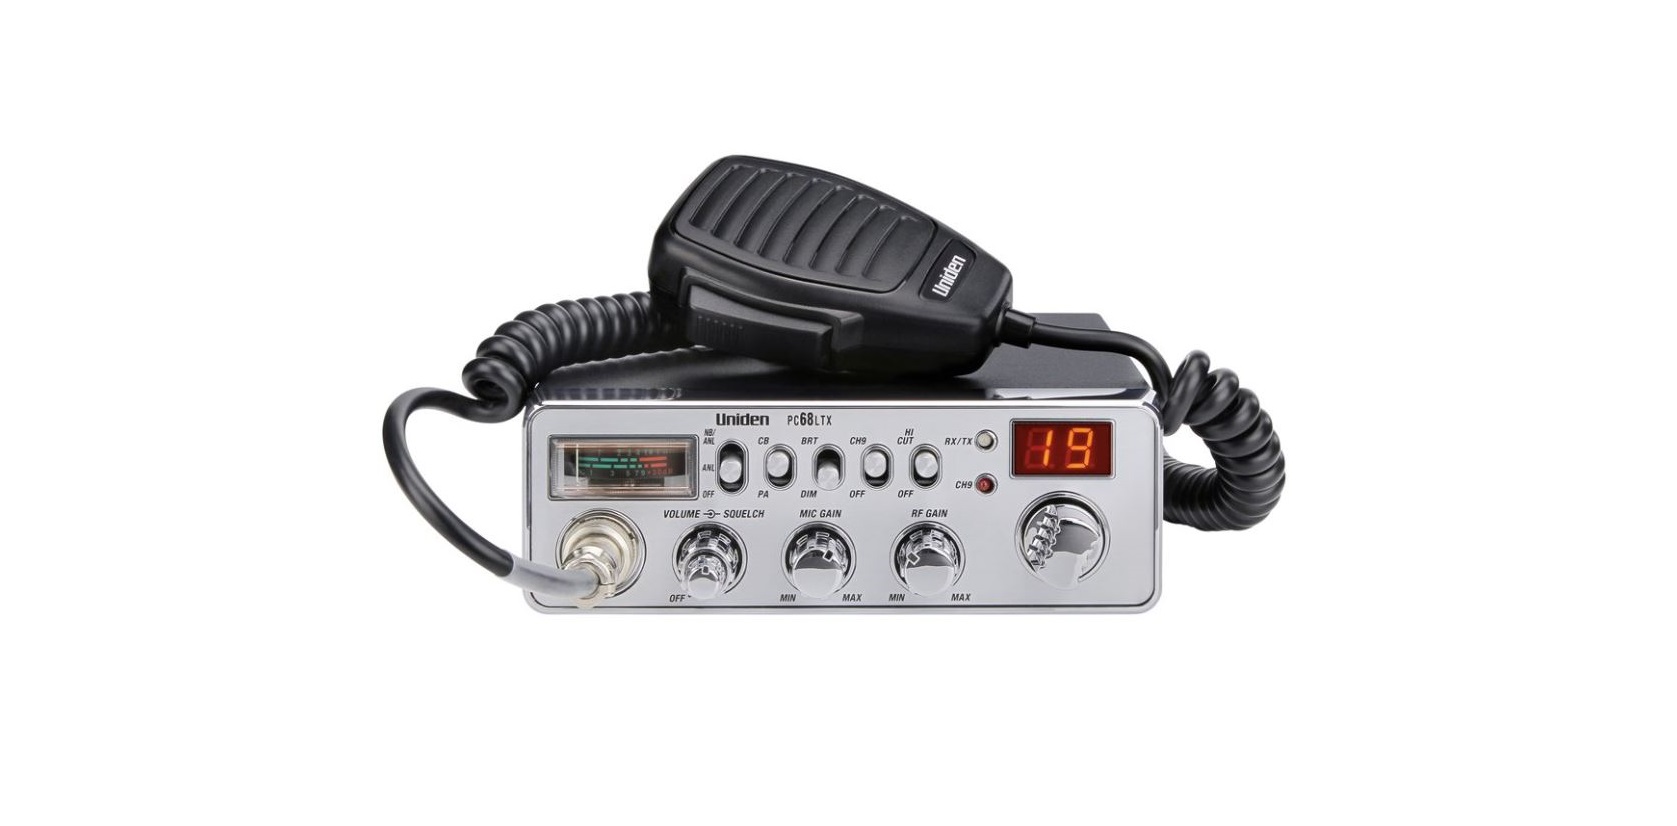 Uniden PC68LTX 40-Channel CB Radio FEATURE